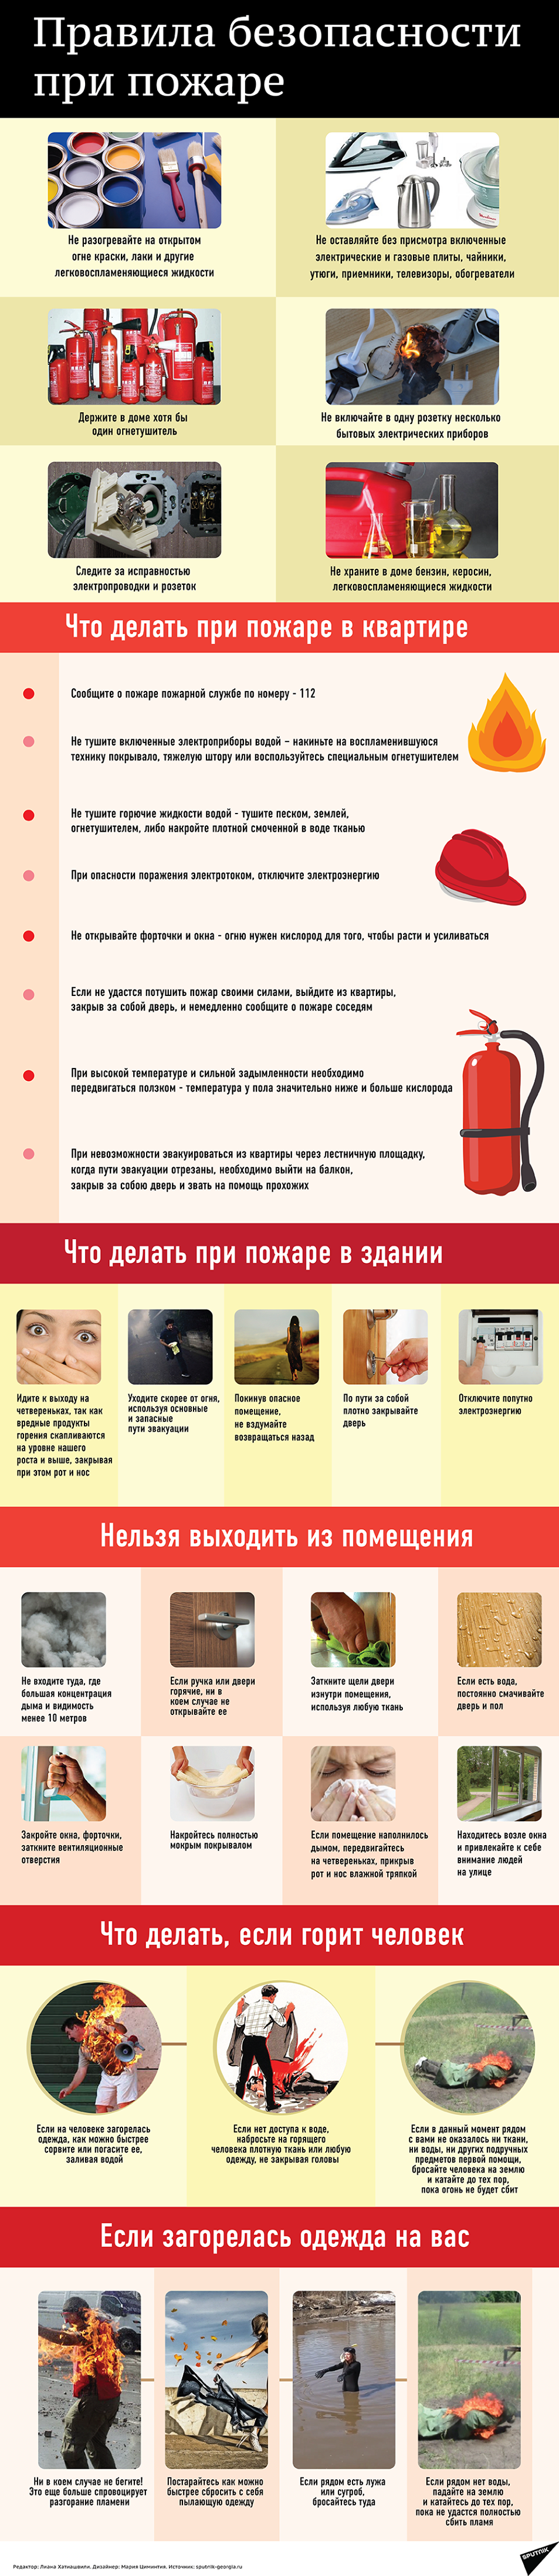 Памятка поведения при пожаре - Sputnik Казахстан